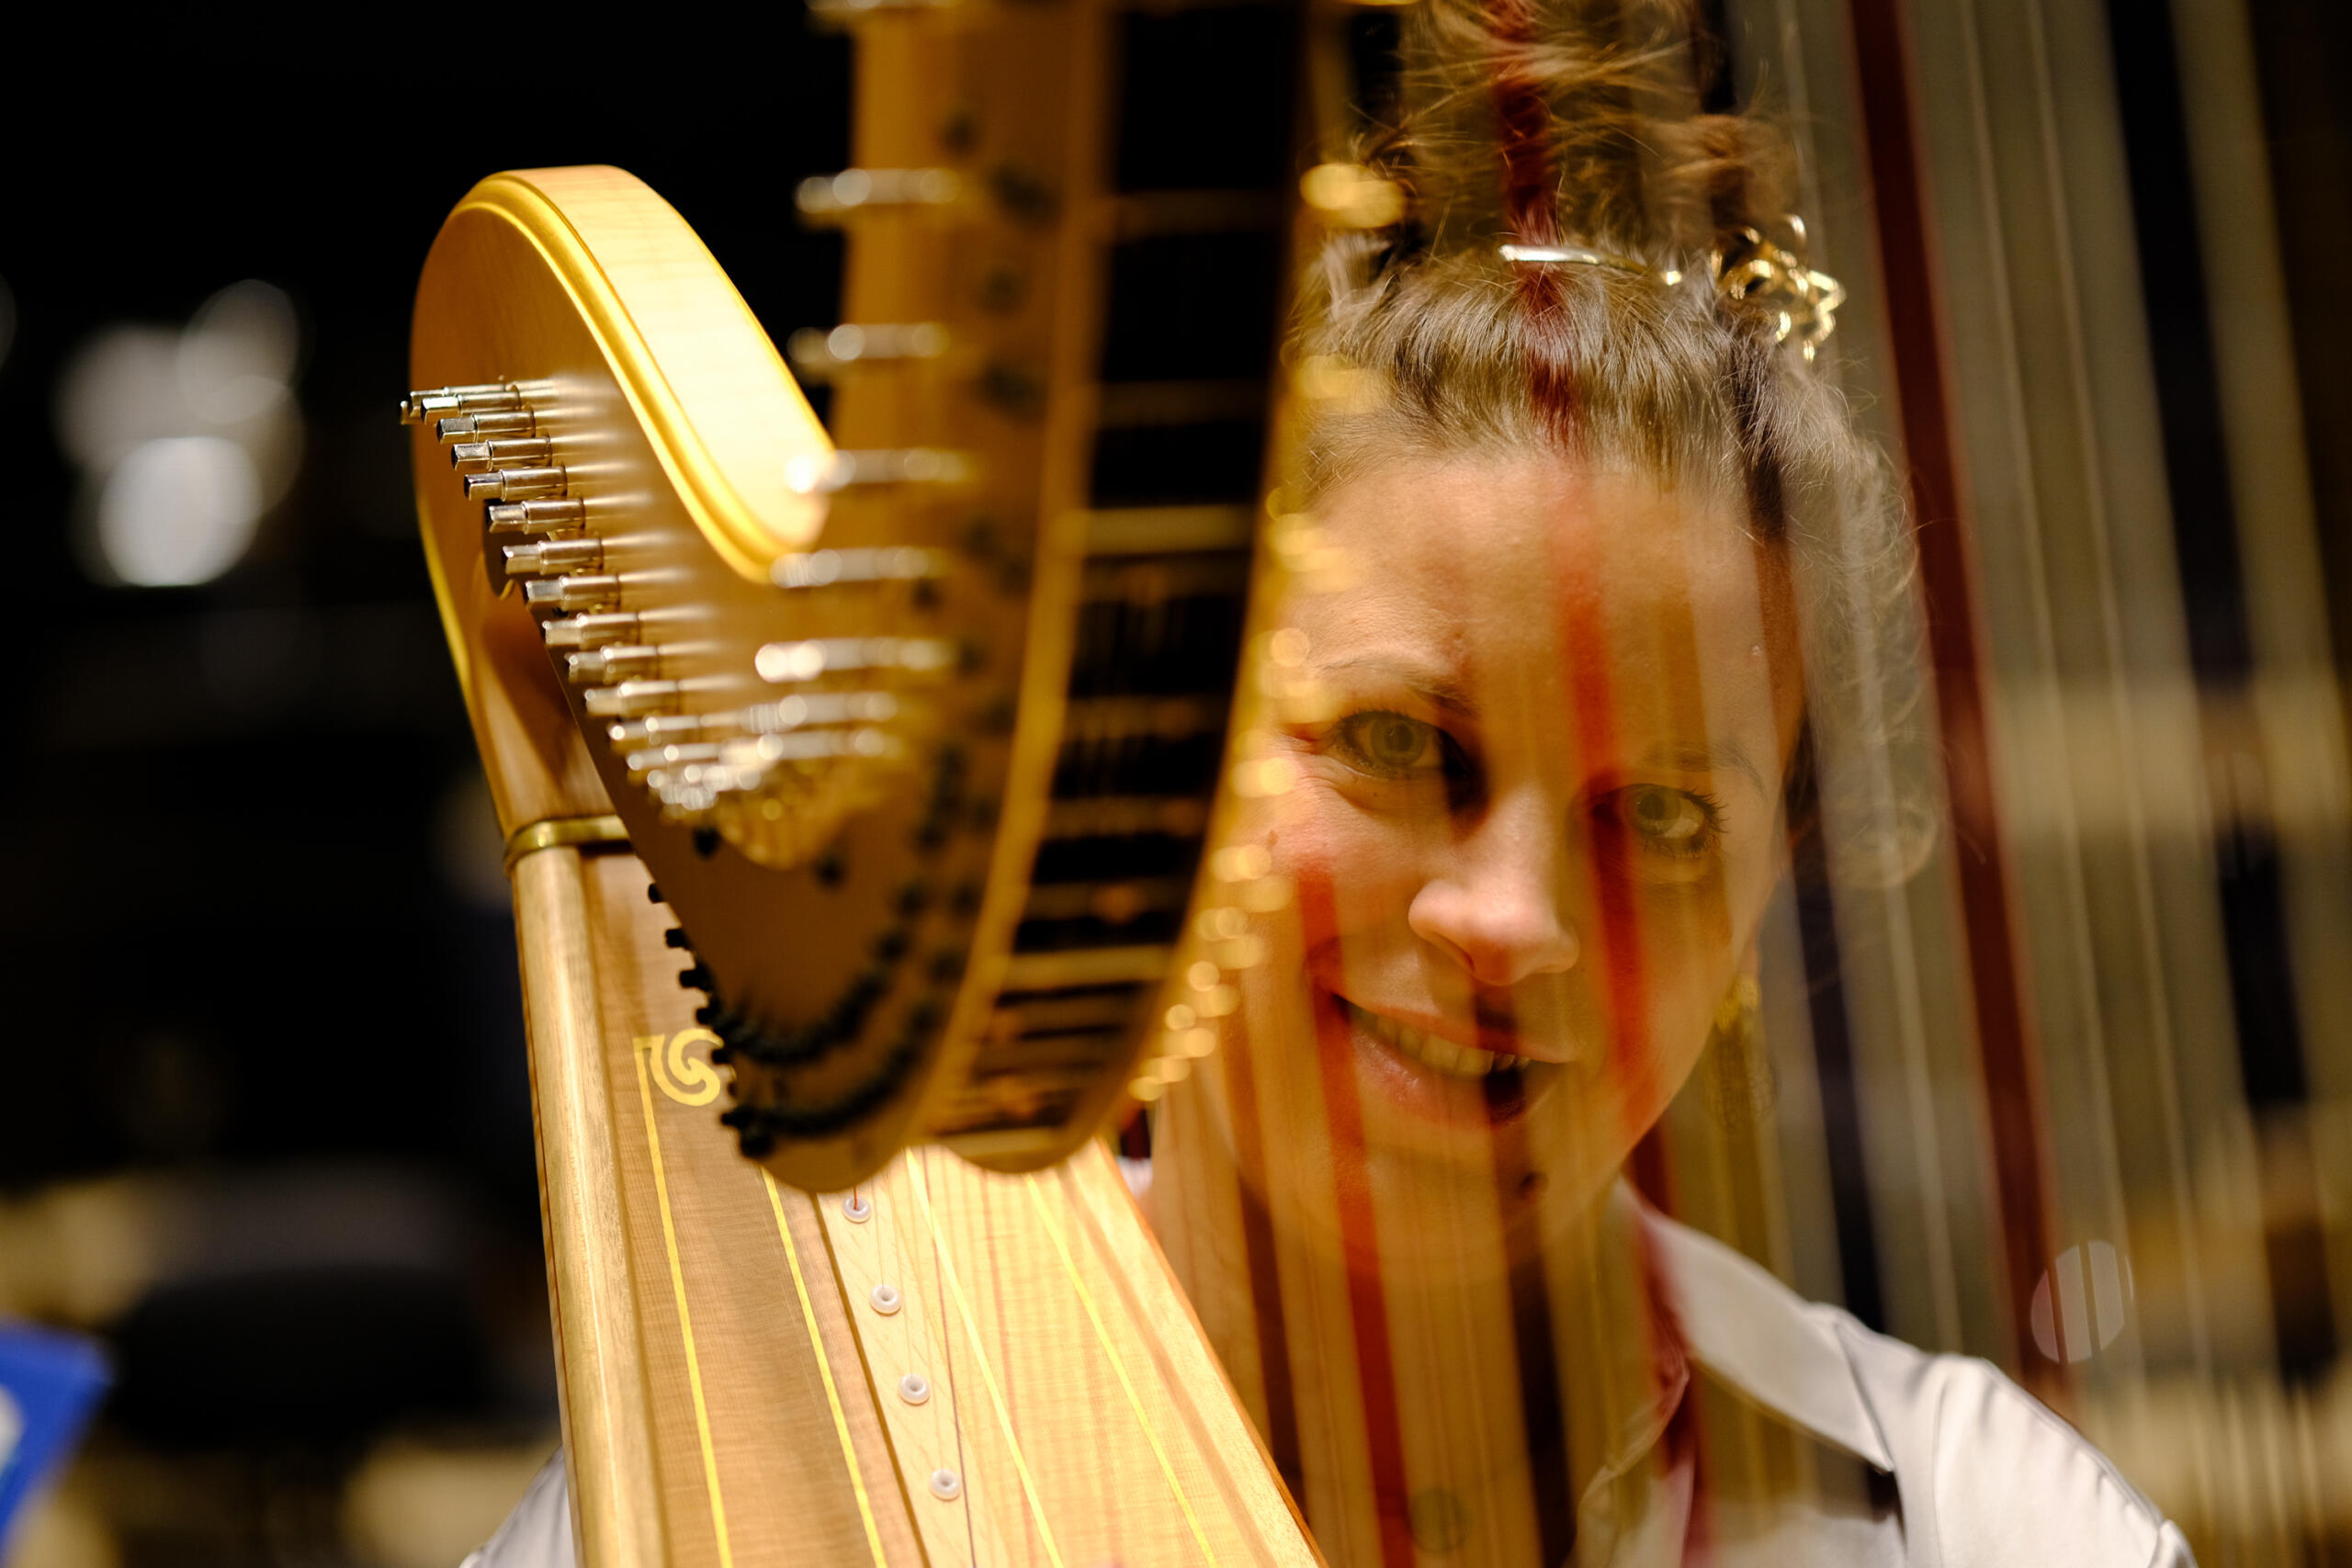 Die Harfenistin blickt zwischen den Saiten ihrer Harfe hindurch und lächelt.